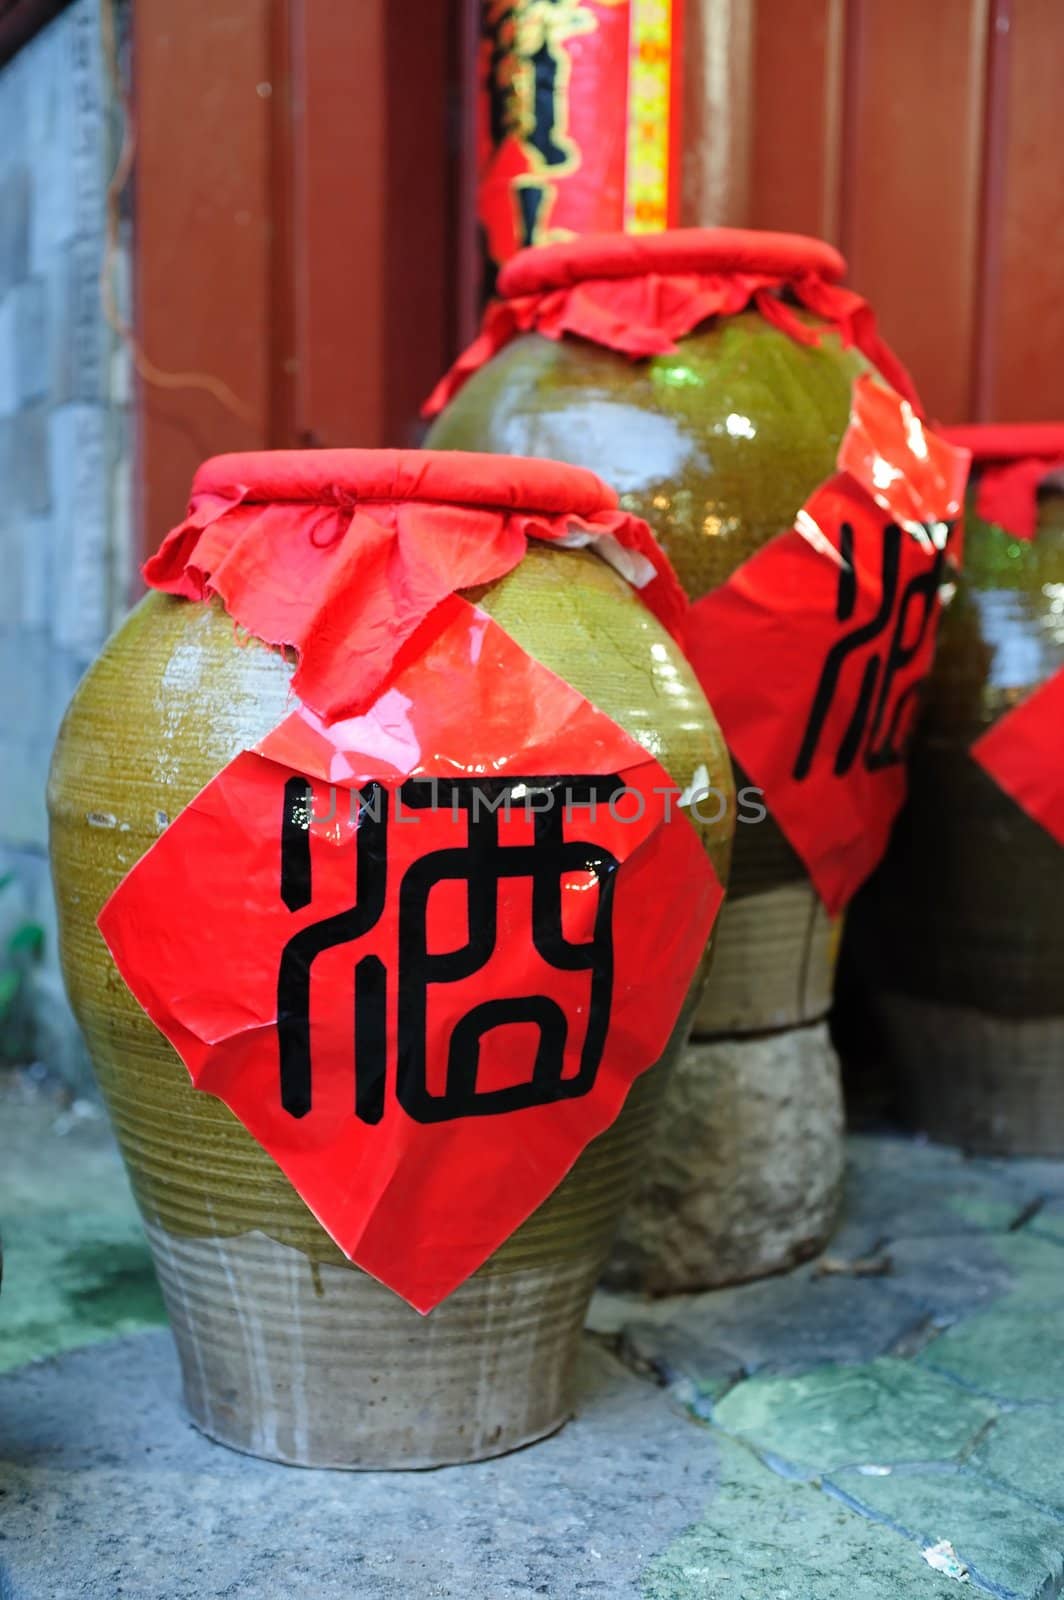 China wine jars by raywoo